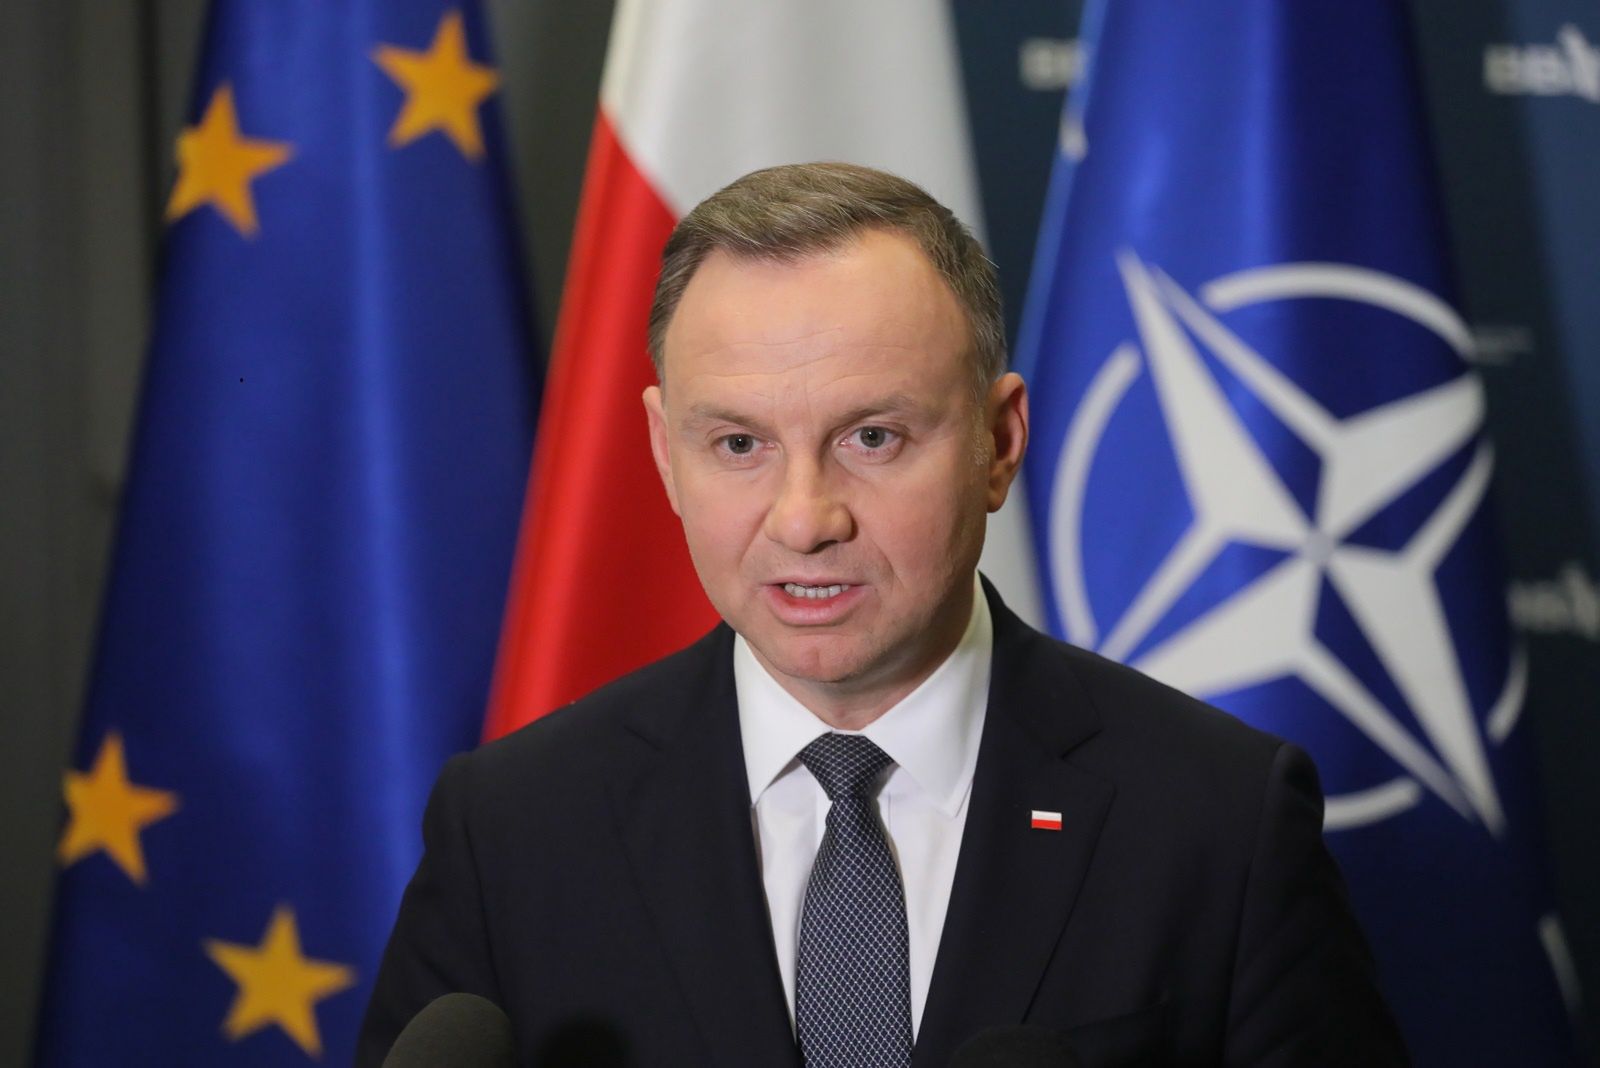 Oświadczenie prezydenta Andrzeja Dudy: "To nie był intencjonalny atak na Polskę"